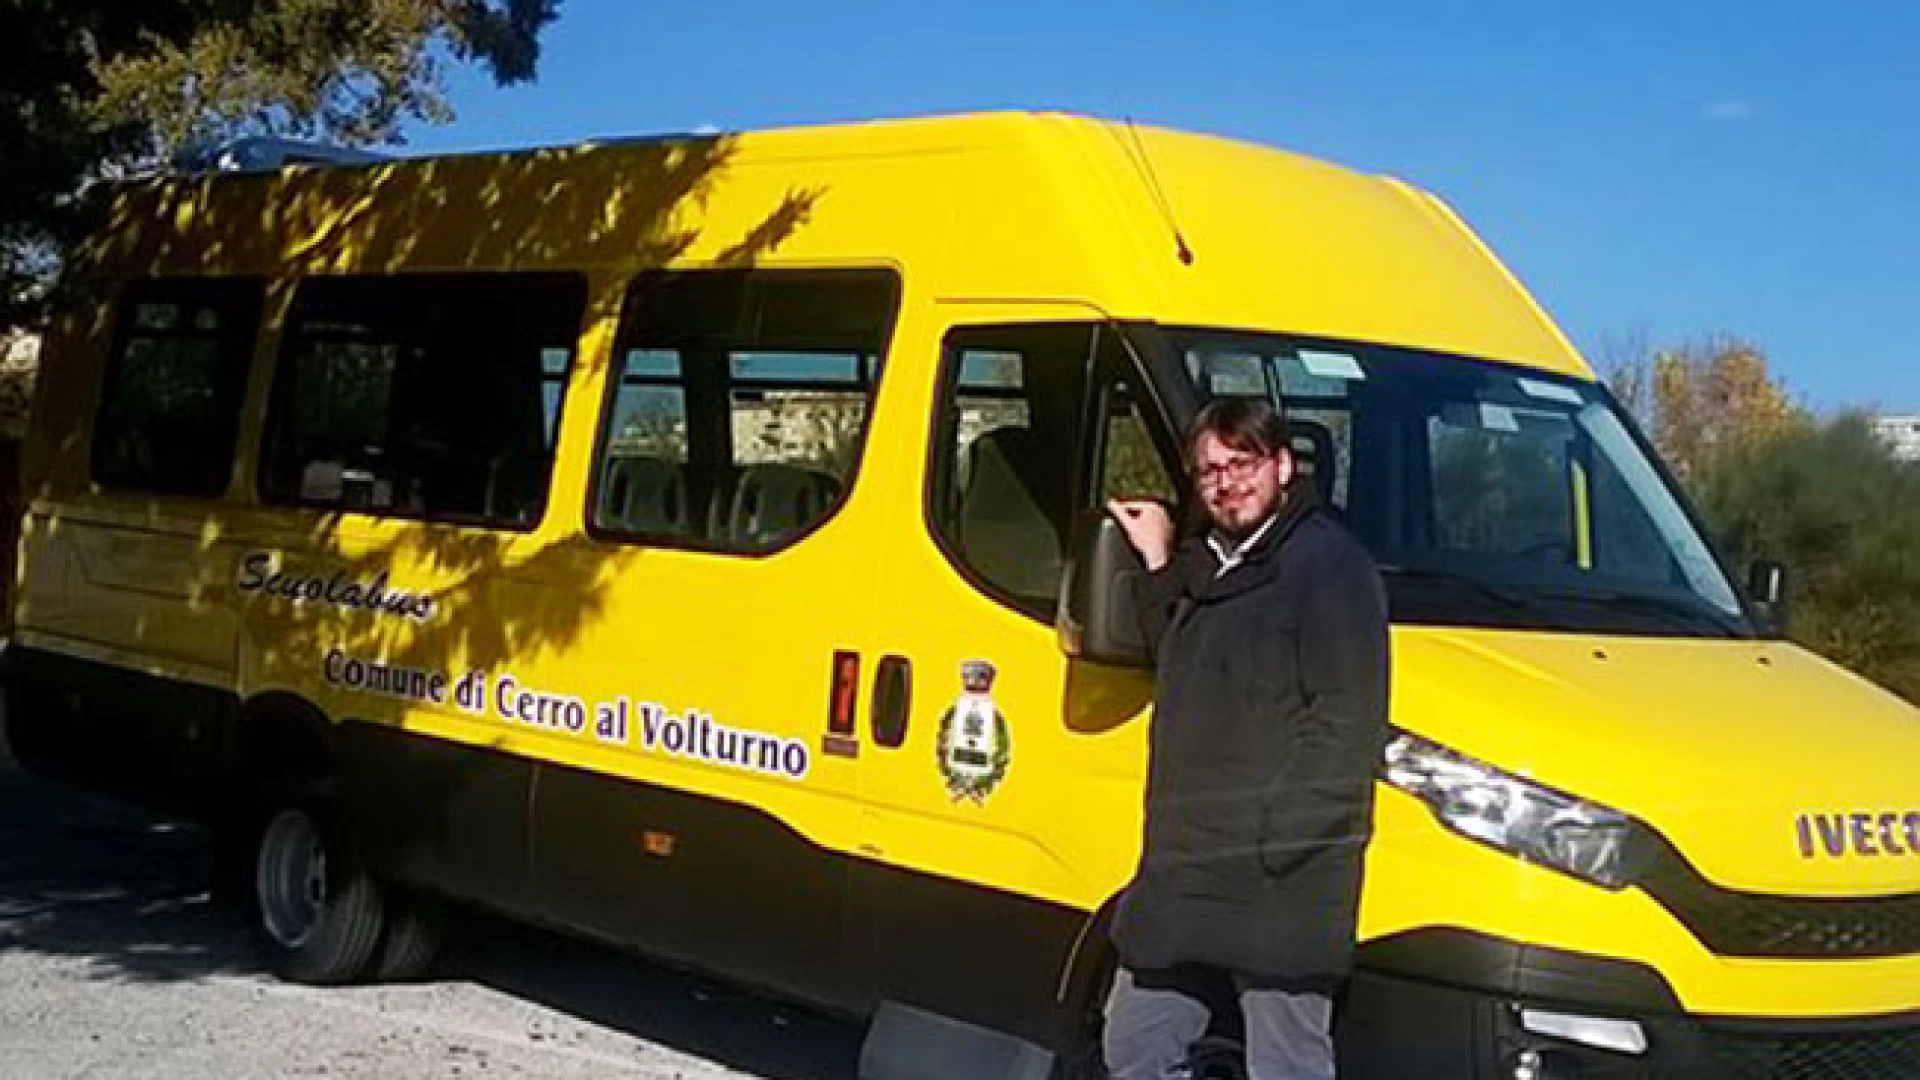 Campobasso: cerimonia di consegna e benedizione dei nuovi scuolabus. Presenti anche numerosi amministratori della Valle del Volturno.